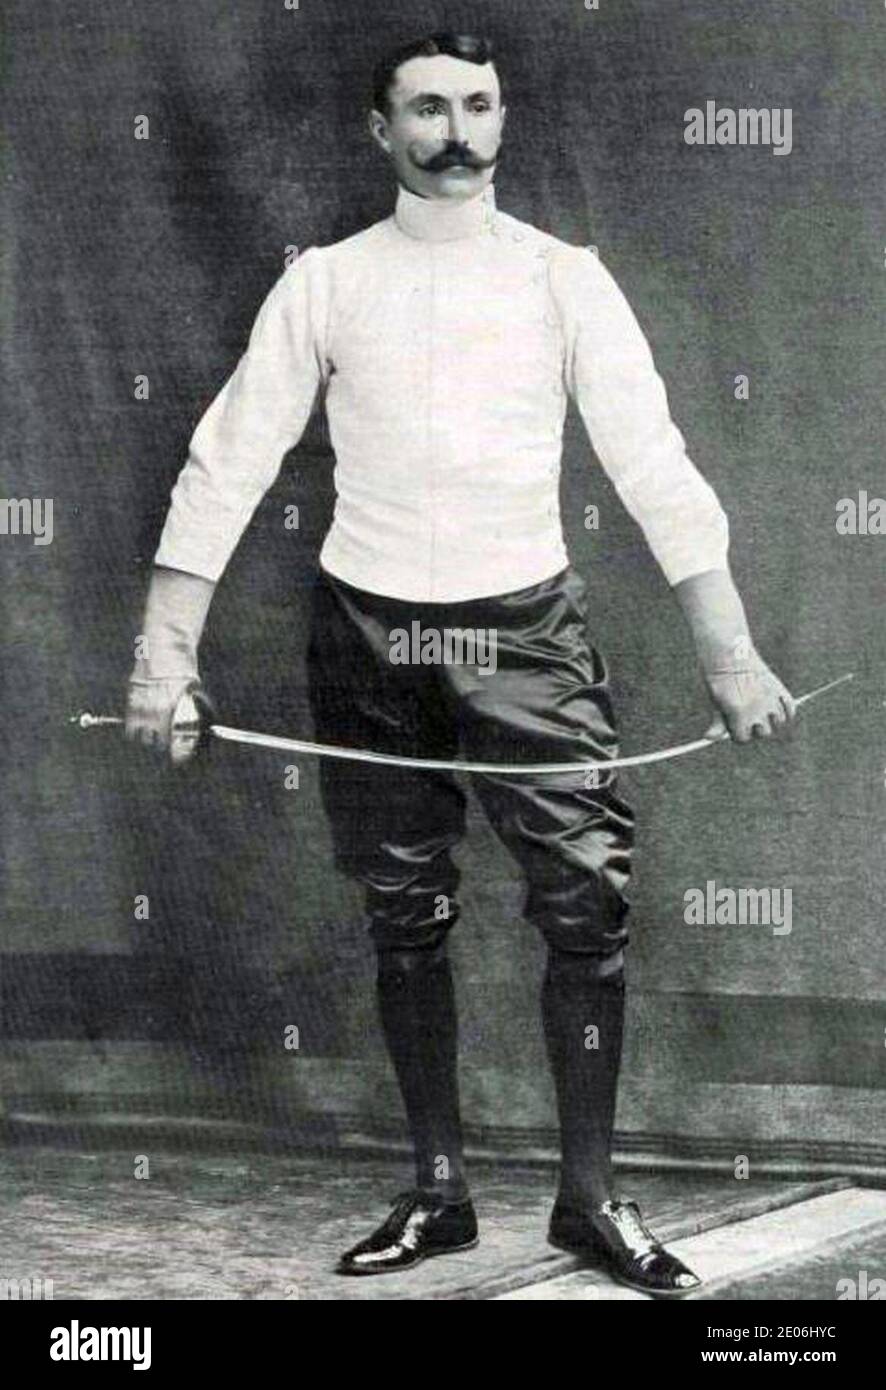 Le capitaine Georges de la Falaise, vainqueur de l'officieux championnat du monde d'épée en avril 1899. Foto Stock